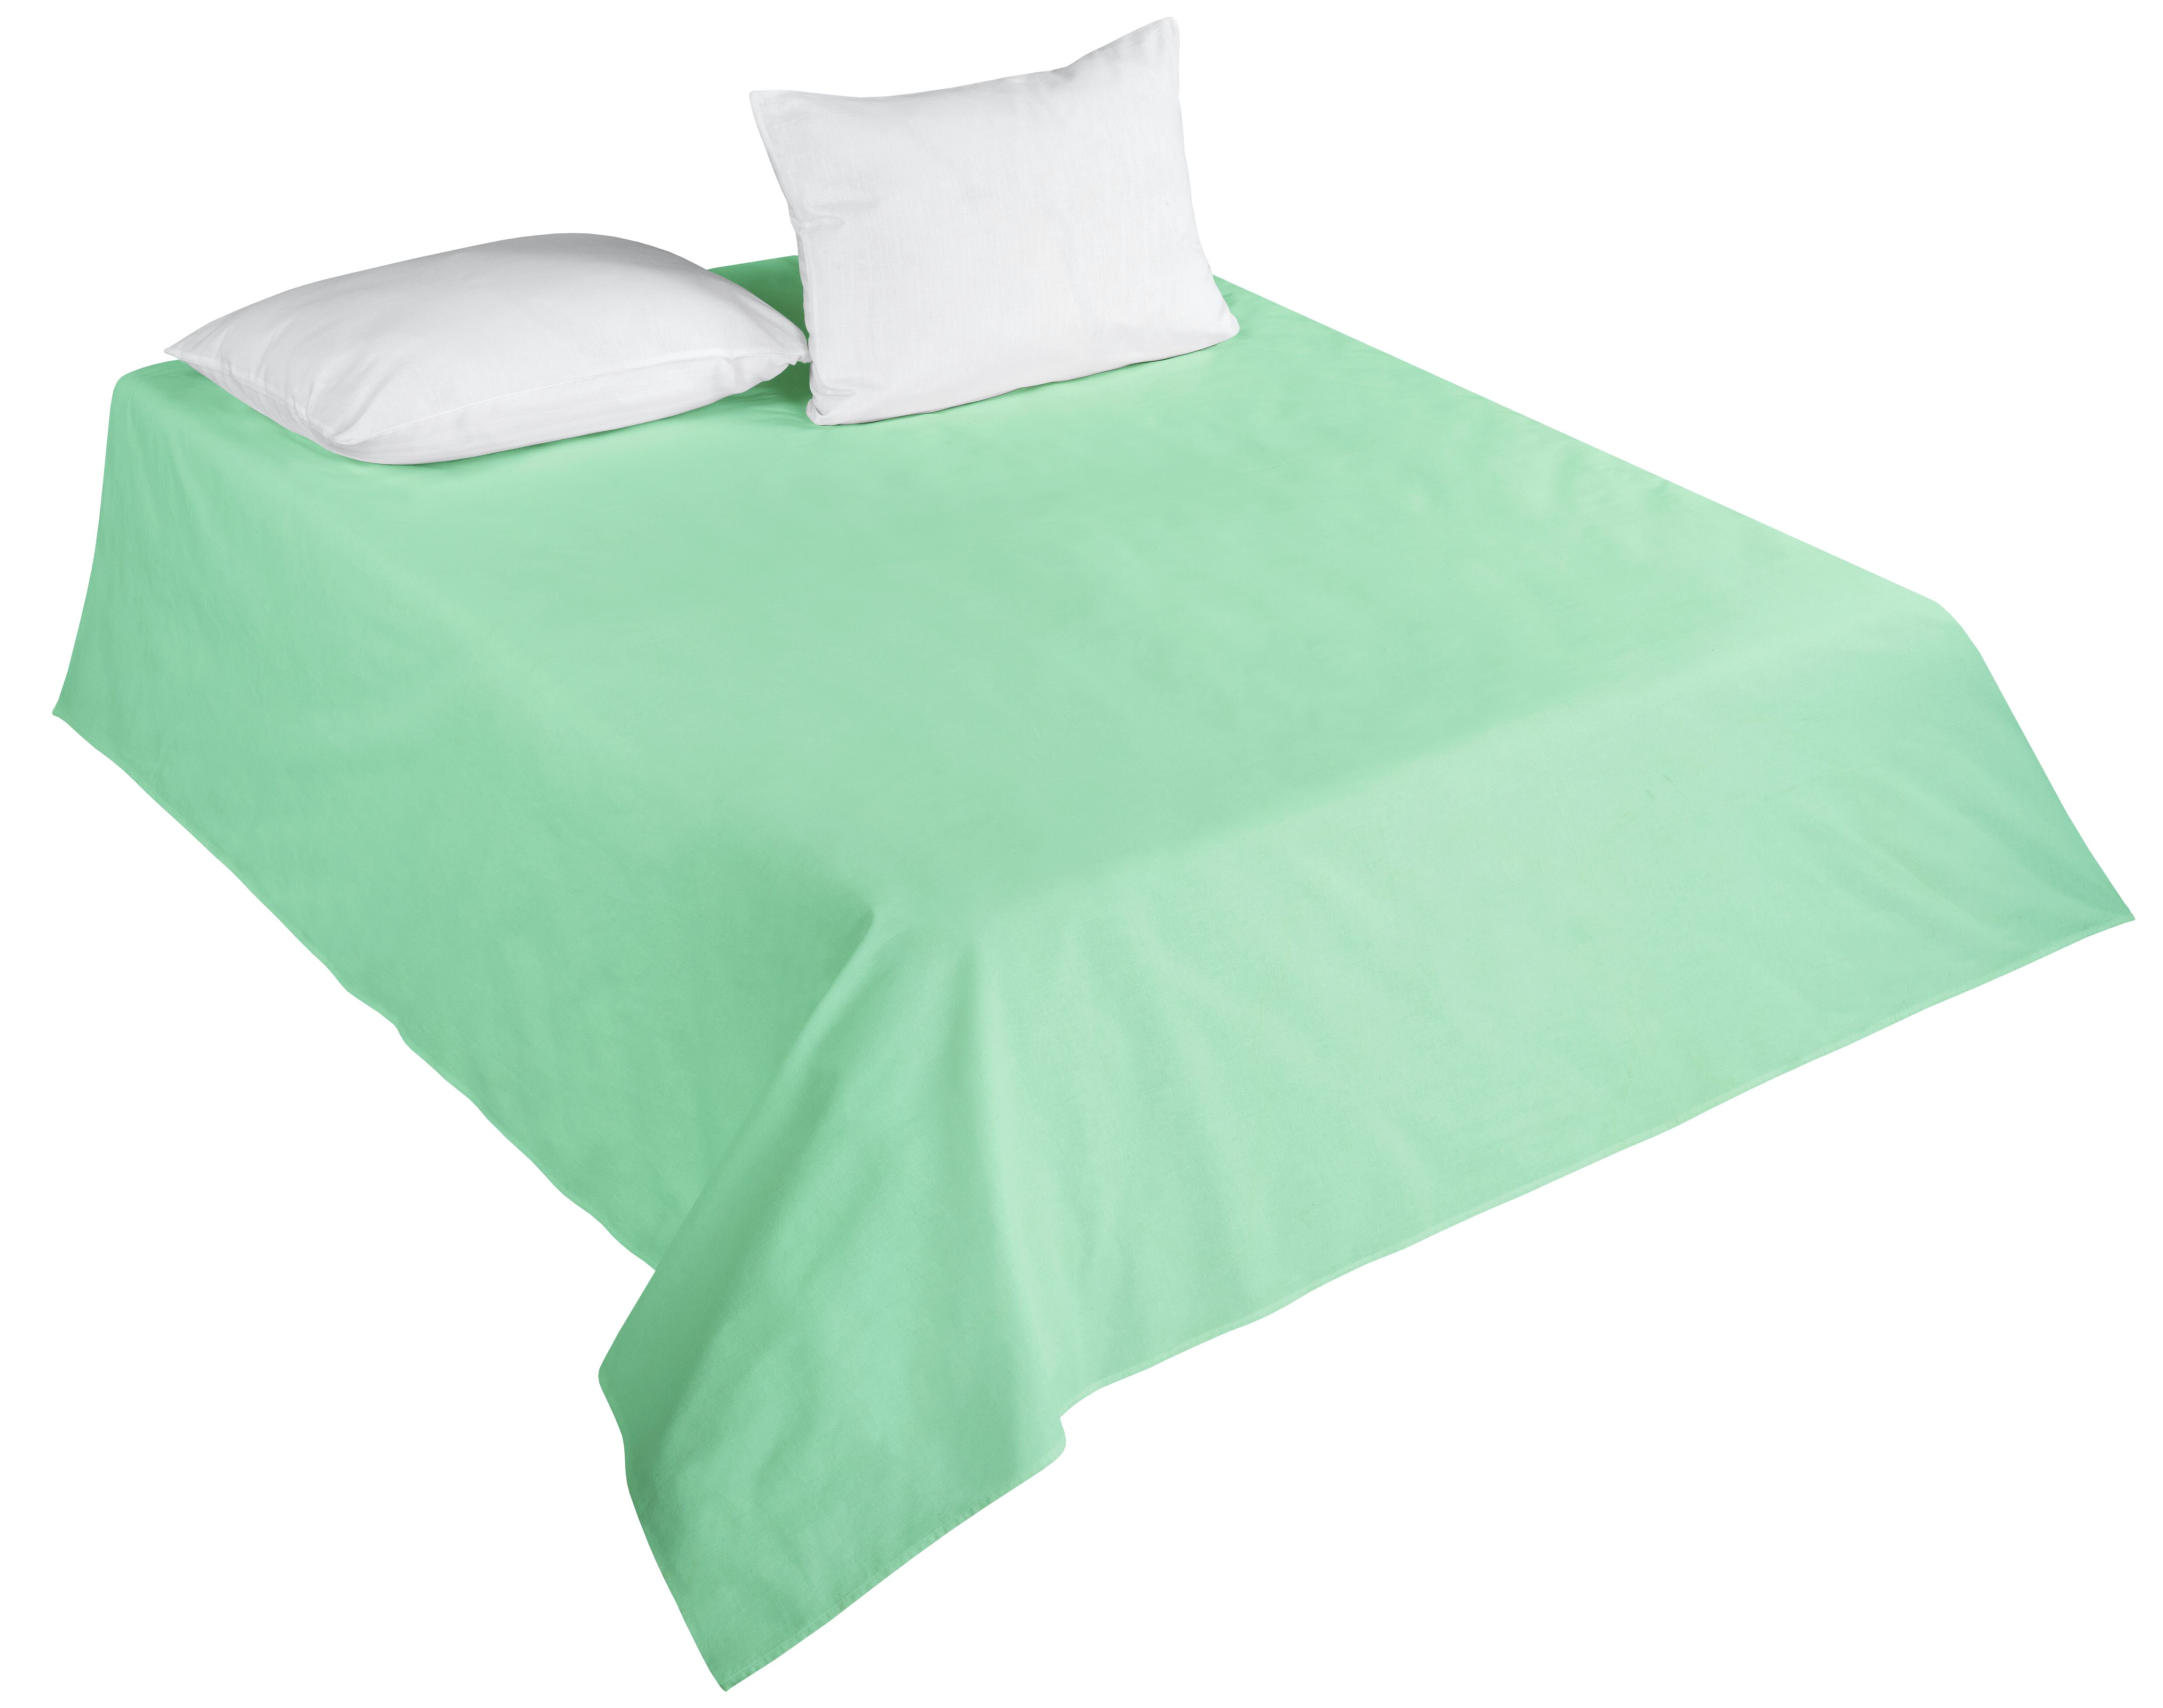 Простыня Jayden Цвет: Зелёный (200х214), размер 200х214 gmg486179 Простыня Jayden Цвет: Зелёный (200х214) - фото 1